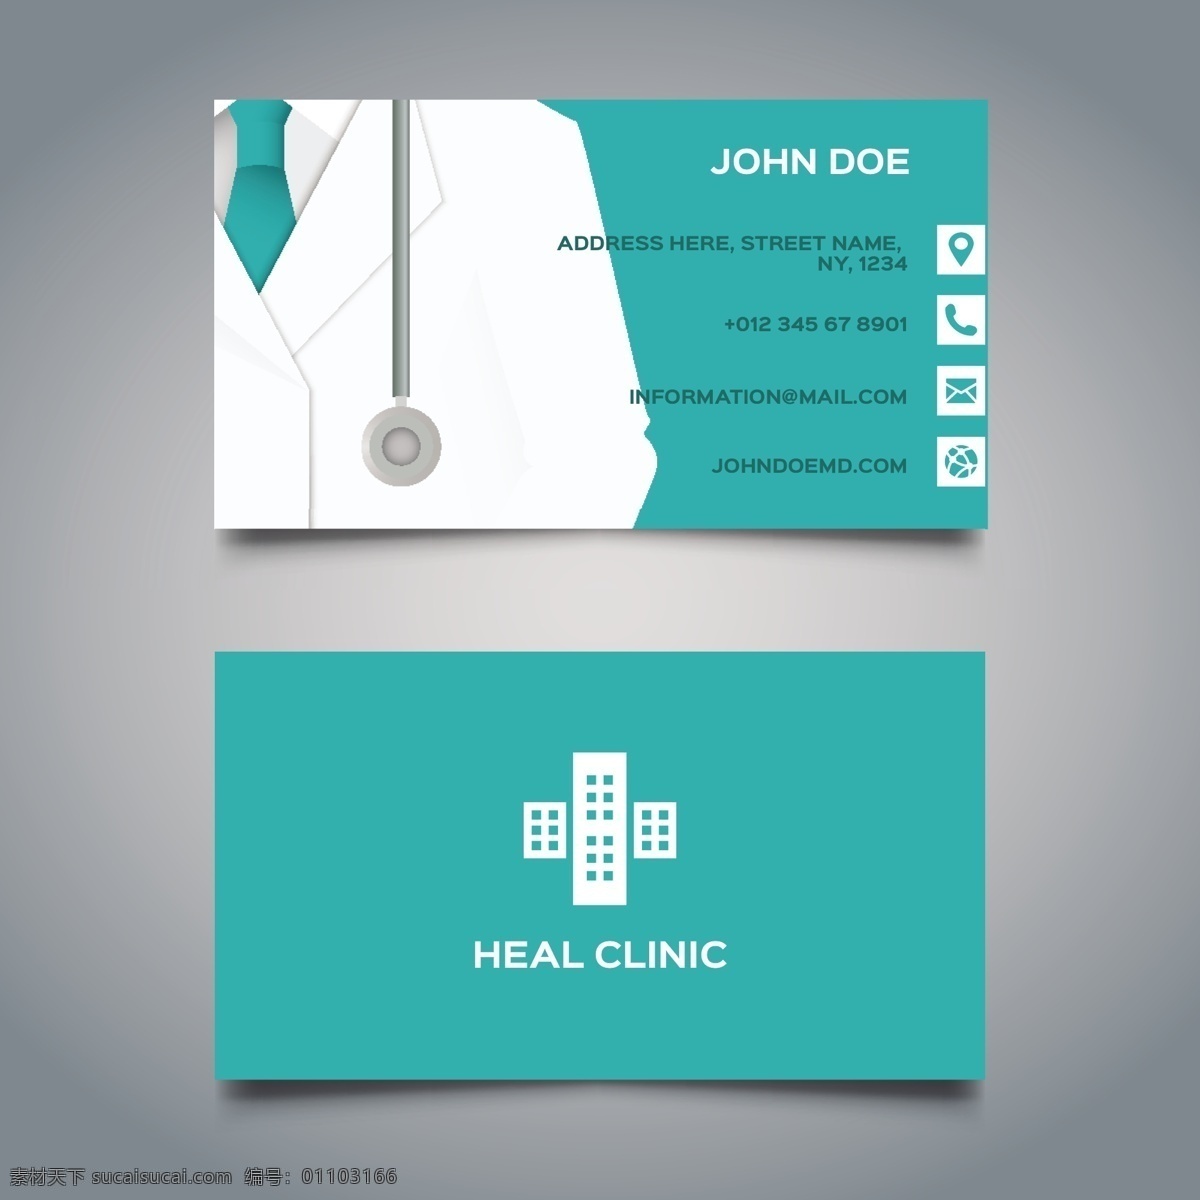 蓝色医疗卡 商标 名片 商业 抽象 卡片 模板 医疗 办公室 医生 健康 科学 演示 医院 文具 公司 医药 品牌 现代